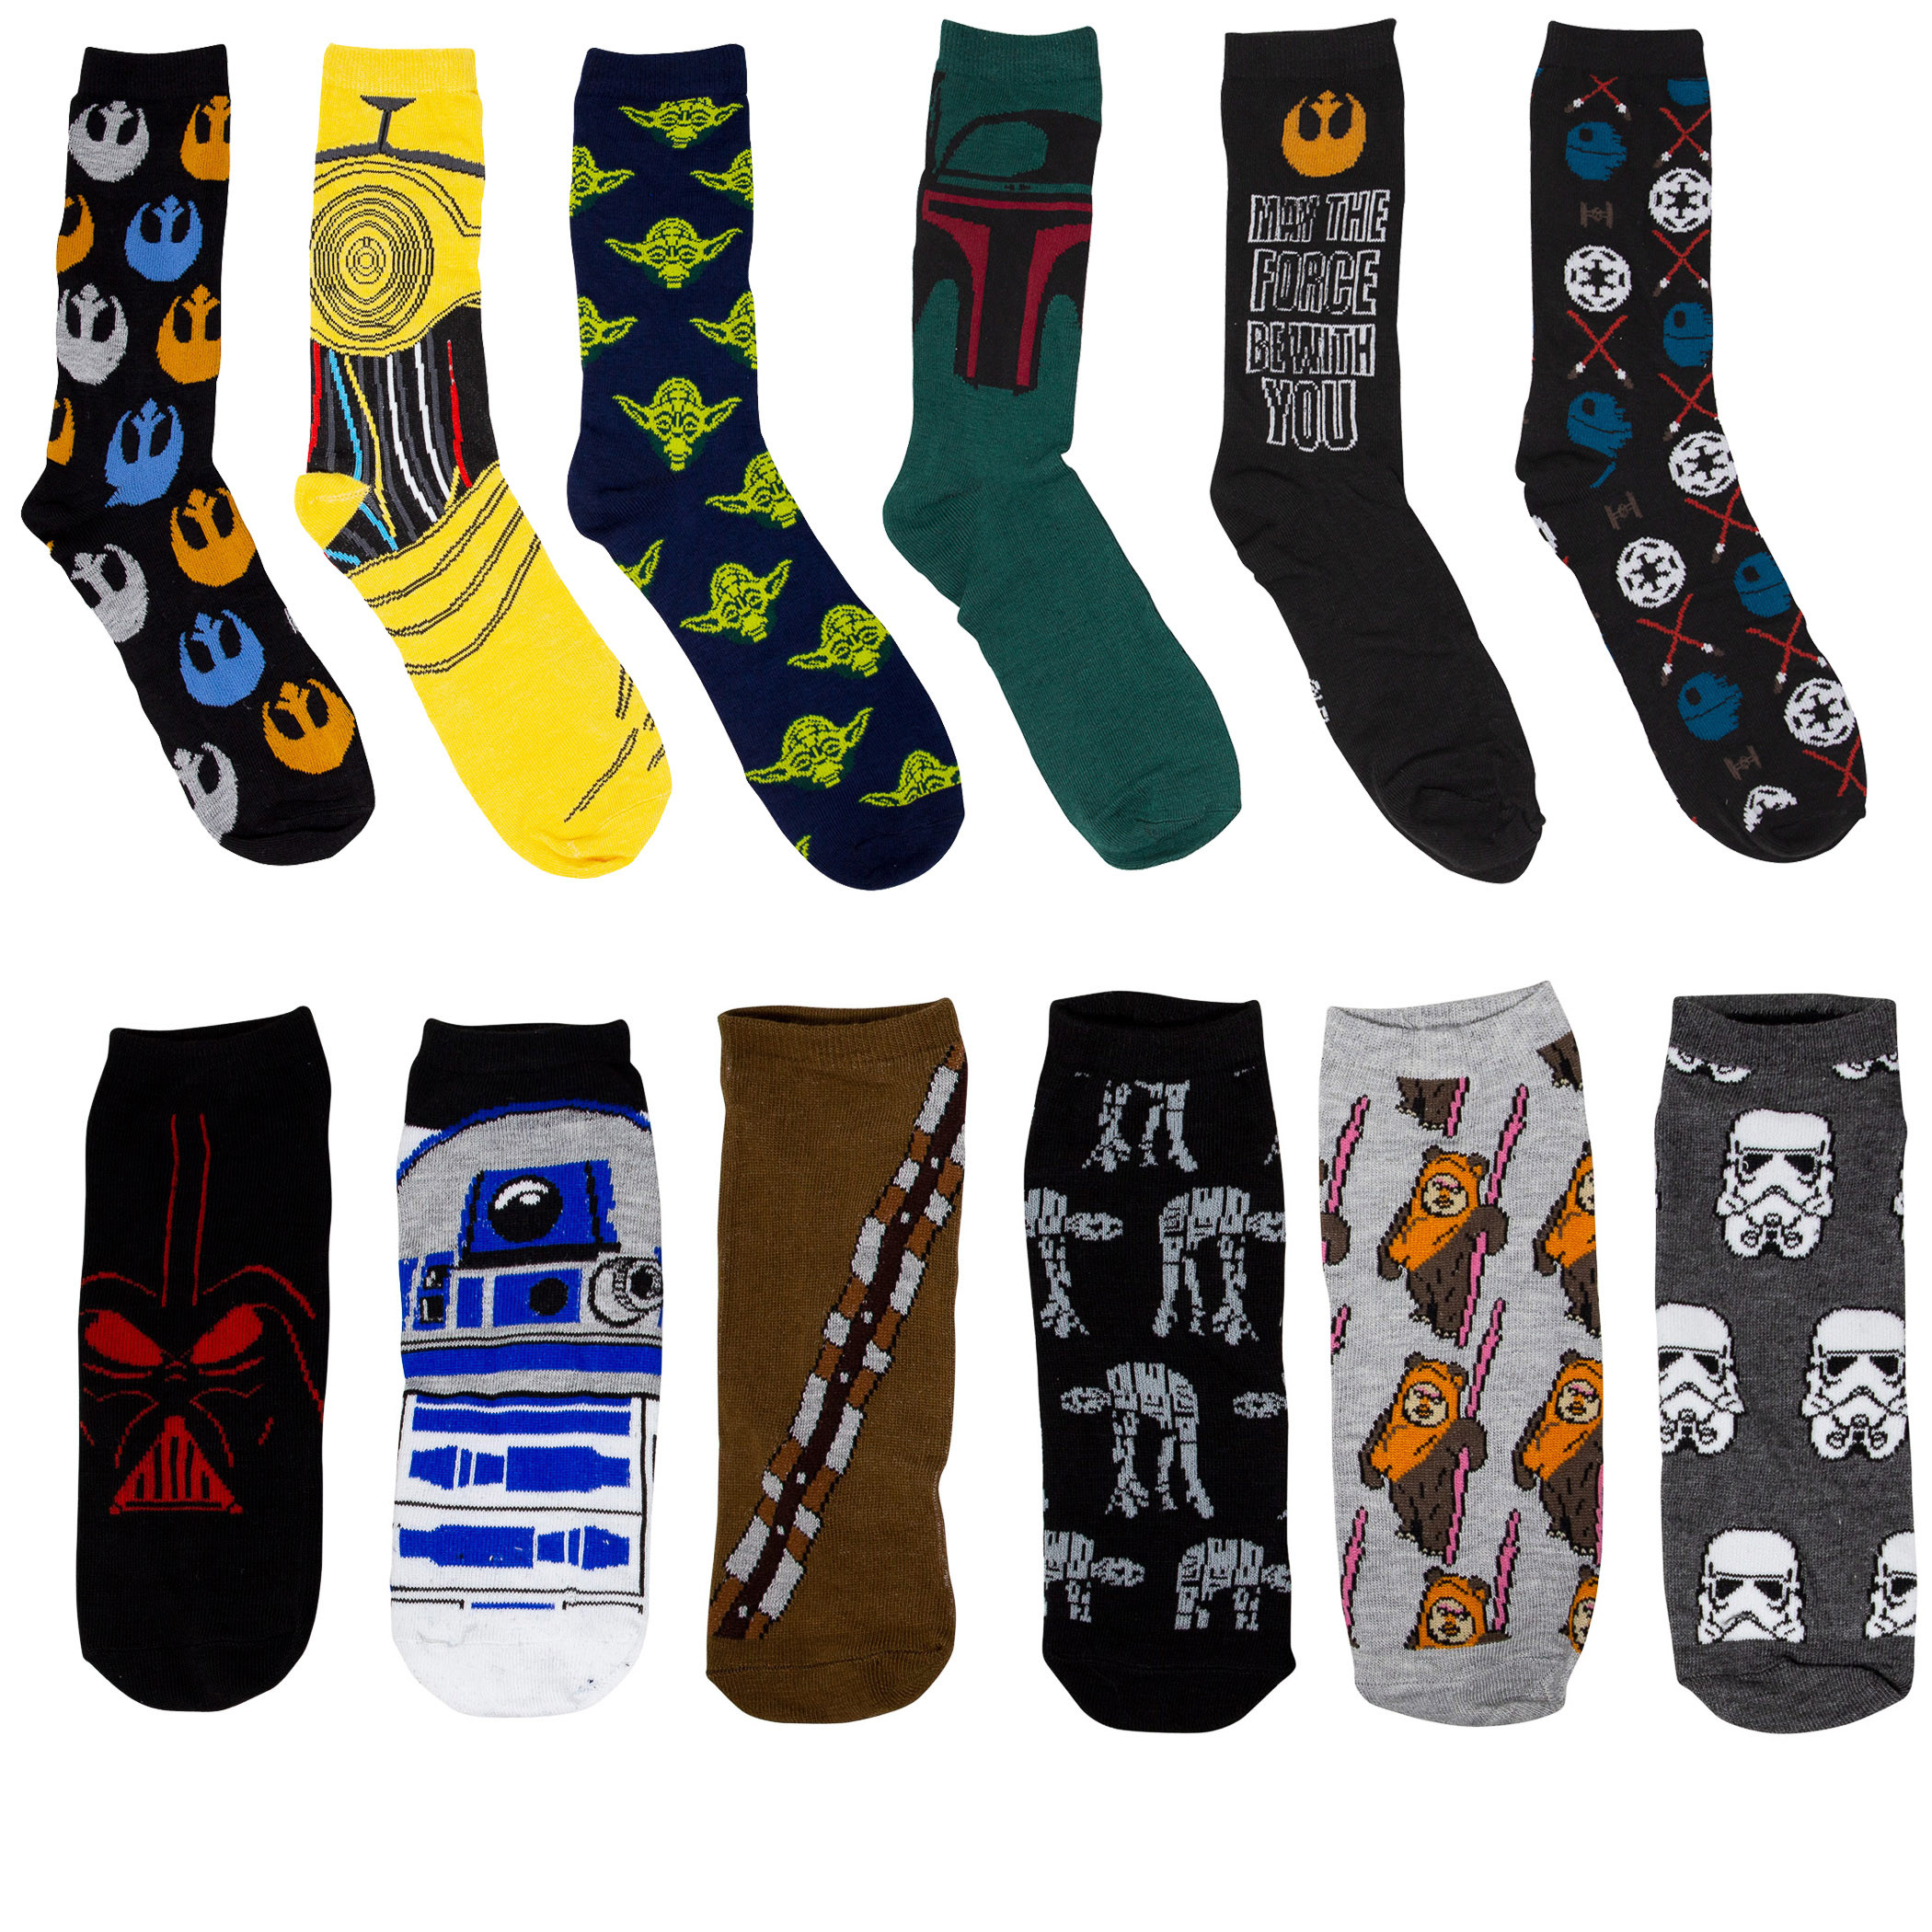 Star Wars Socks 12-Pack Gift Giving Box